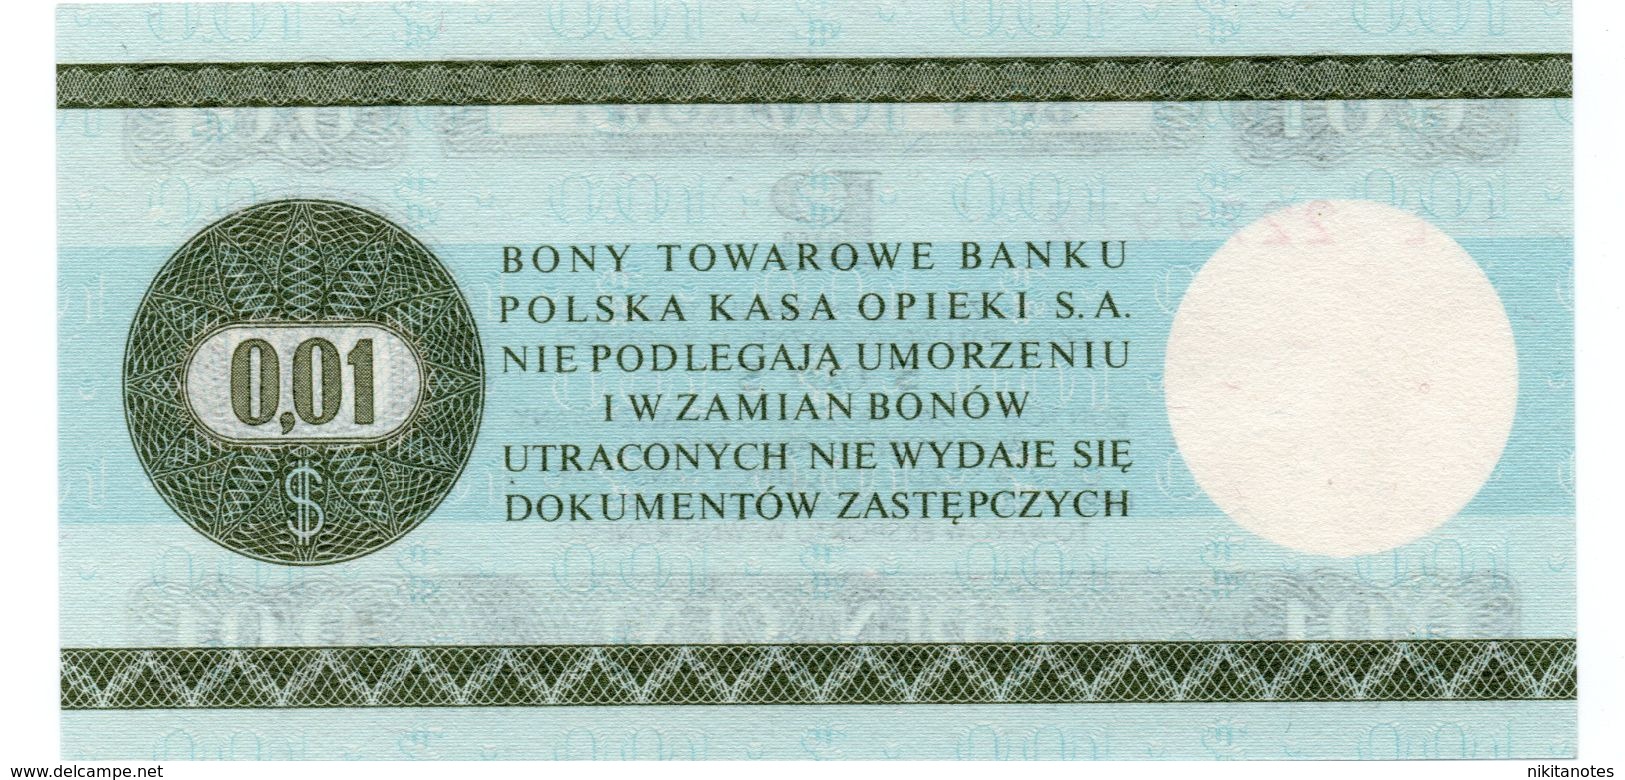 1 CENTESIMI 0,01 DOLLARO Polonia 1979 SEE SCAN FOTO Pekao BON Towarowy POLAND - Poland